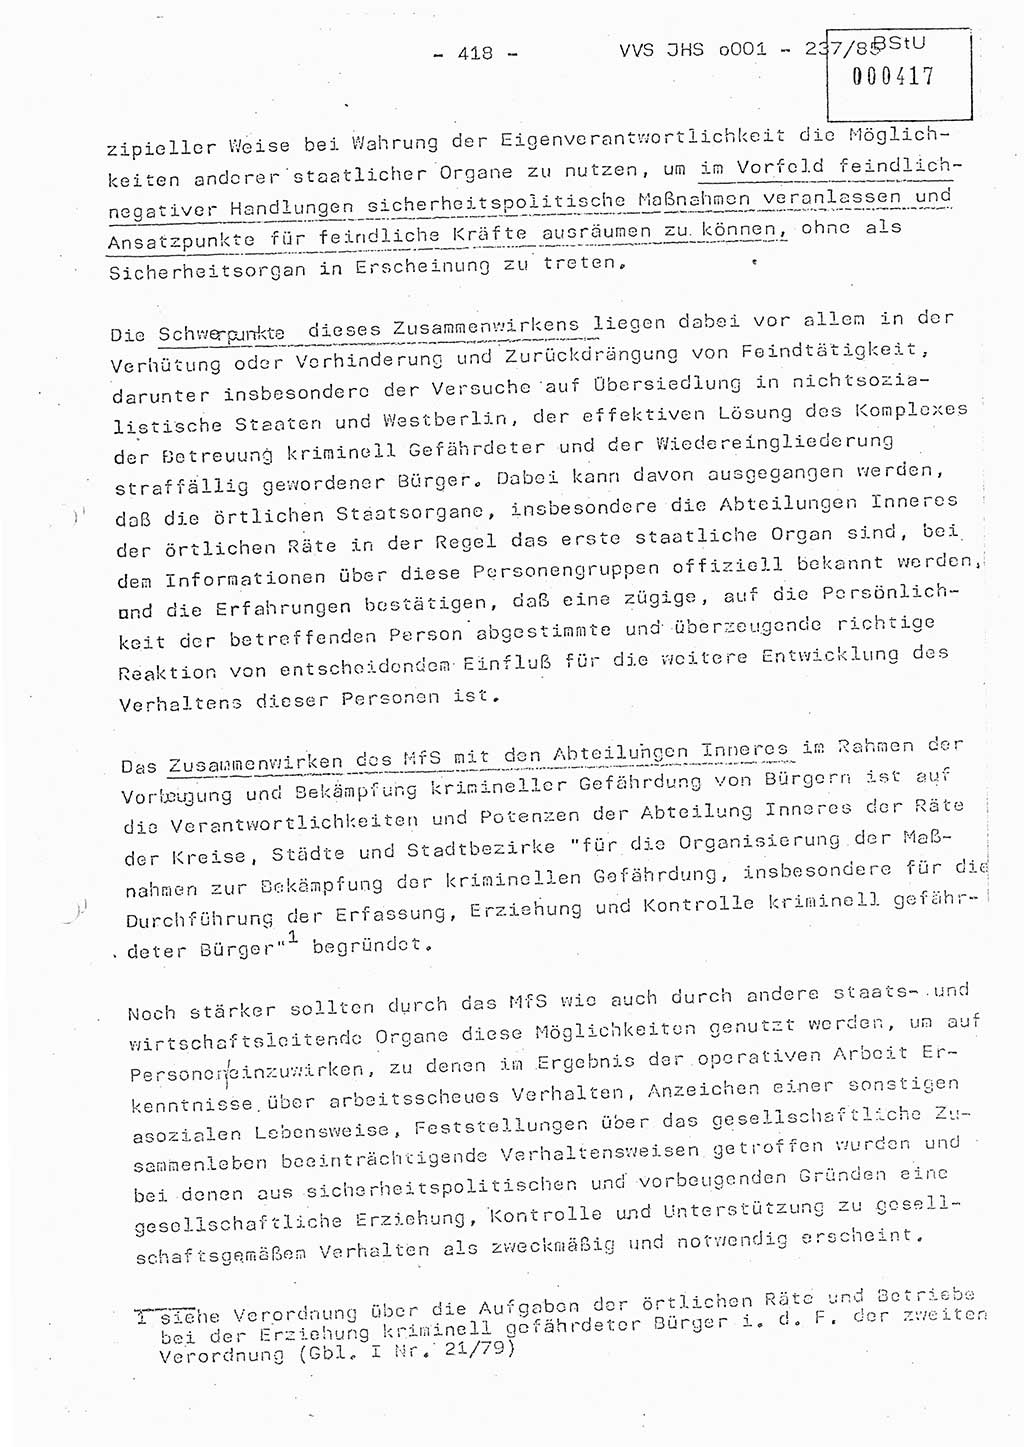 Dissertation Oberstleutnant Peter Jakulski (JHS), Oberstleutnat Christian Rudolph (HA Ⅸ), Major Horst Böttger (ZMD), Major Wolfgang Grüneberg (JHS), Major Albert Meutsch (JHS), Ministerium für Staatssicherheit (MfS) [Deutsche Demokratische Republik (DDR)], Juristische Hochschule (JHS), Vertrauliche Verschlußsache (VVS) o001-237/85, Potsdam 1985, Seite 418 (Diss. MfS DDR JHS VVS o001-237/85 1985, S. 418)